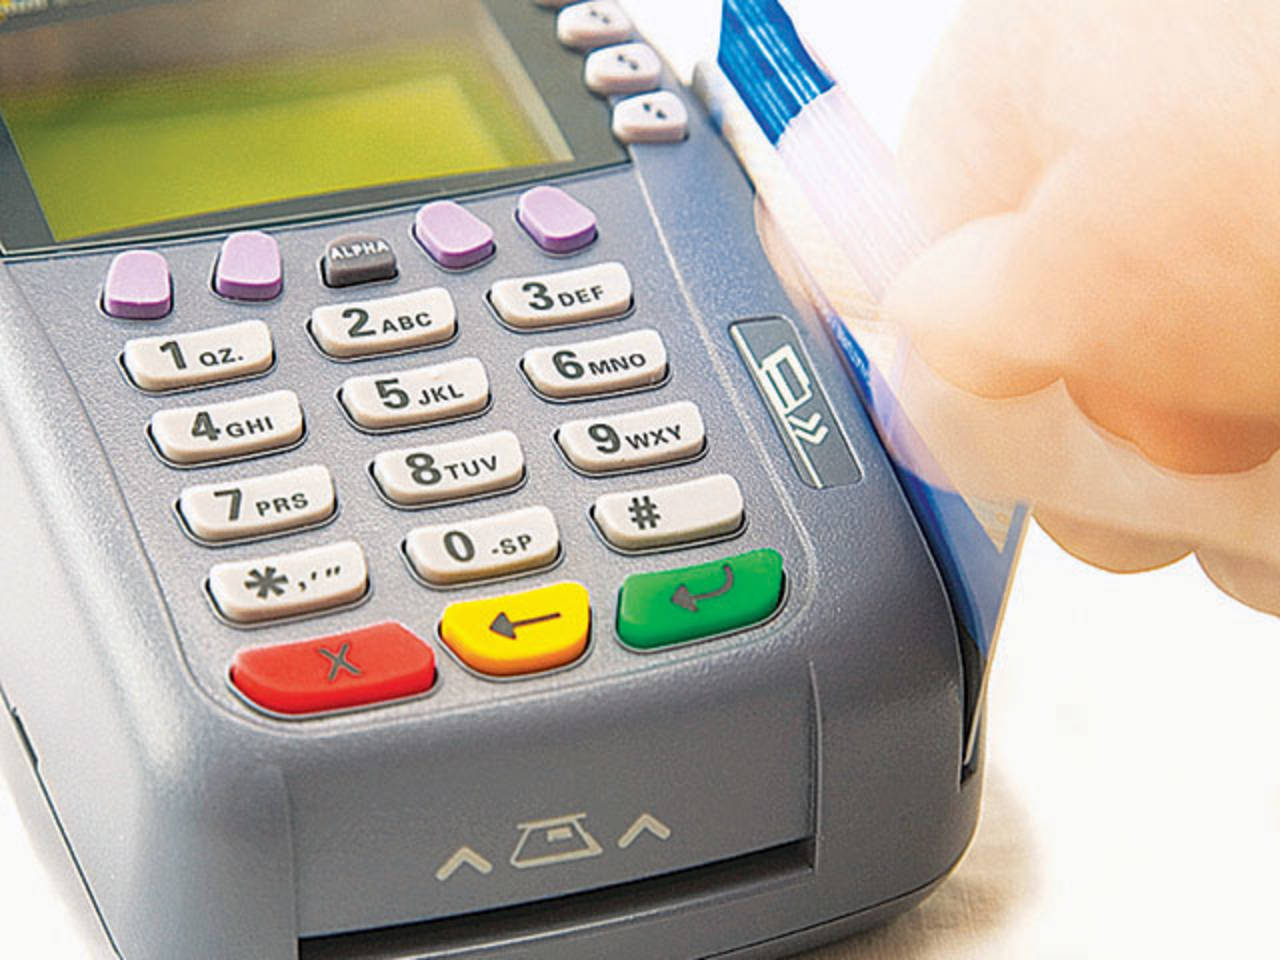 Innovación. En México, Visa trabaja con bancos y autoridades para masificar los dispositivos de pagos sin deslizar la tarjeta. (ARCHIVO)